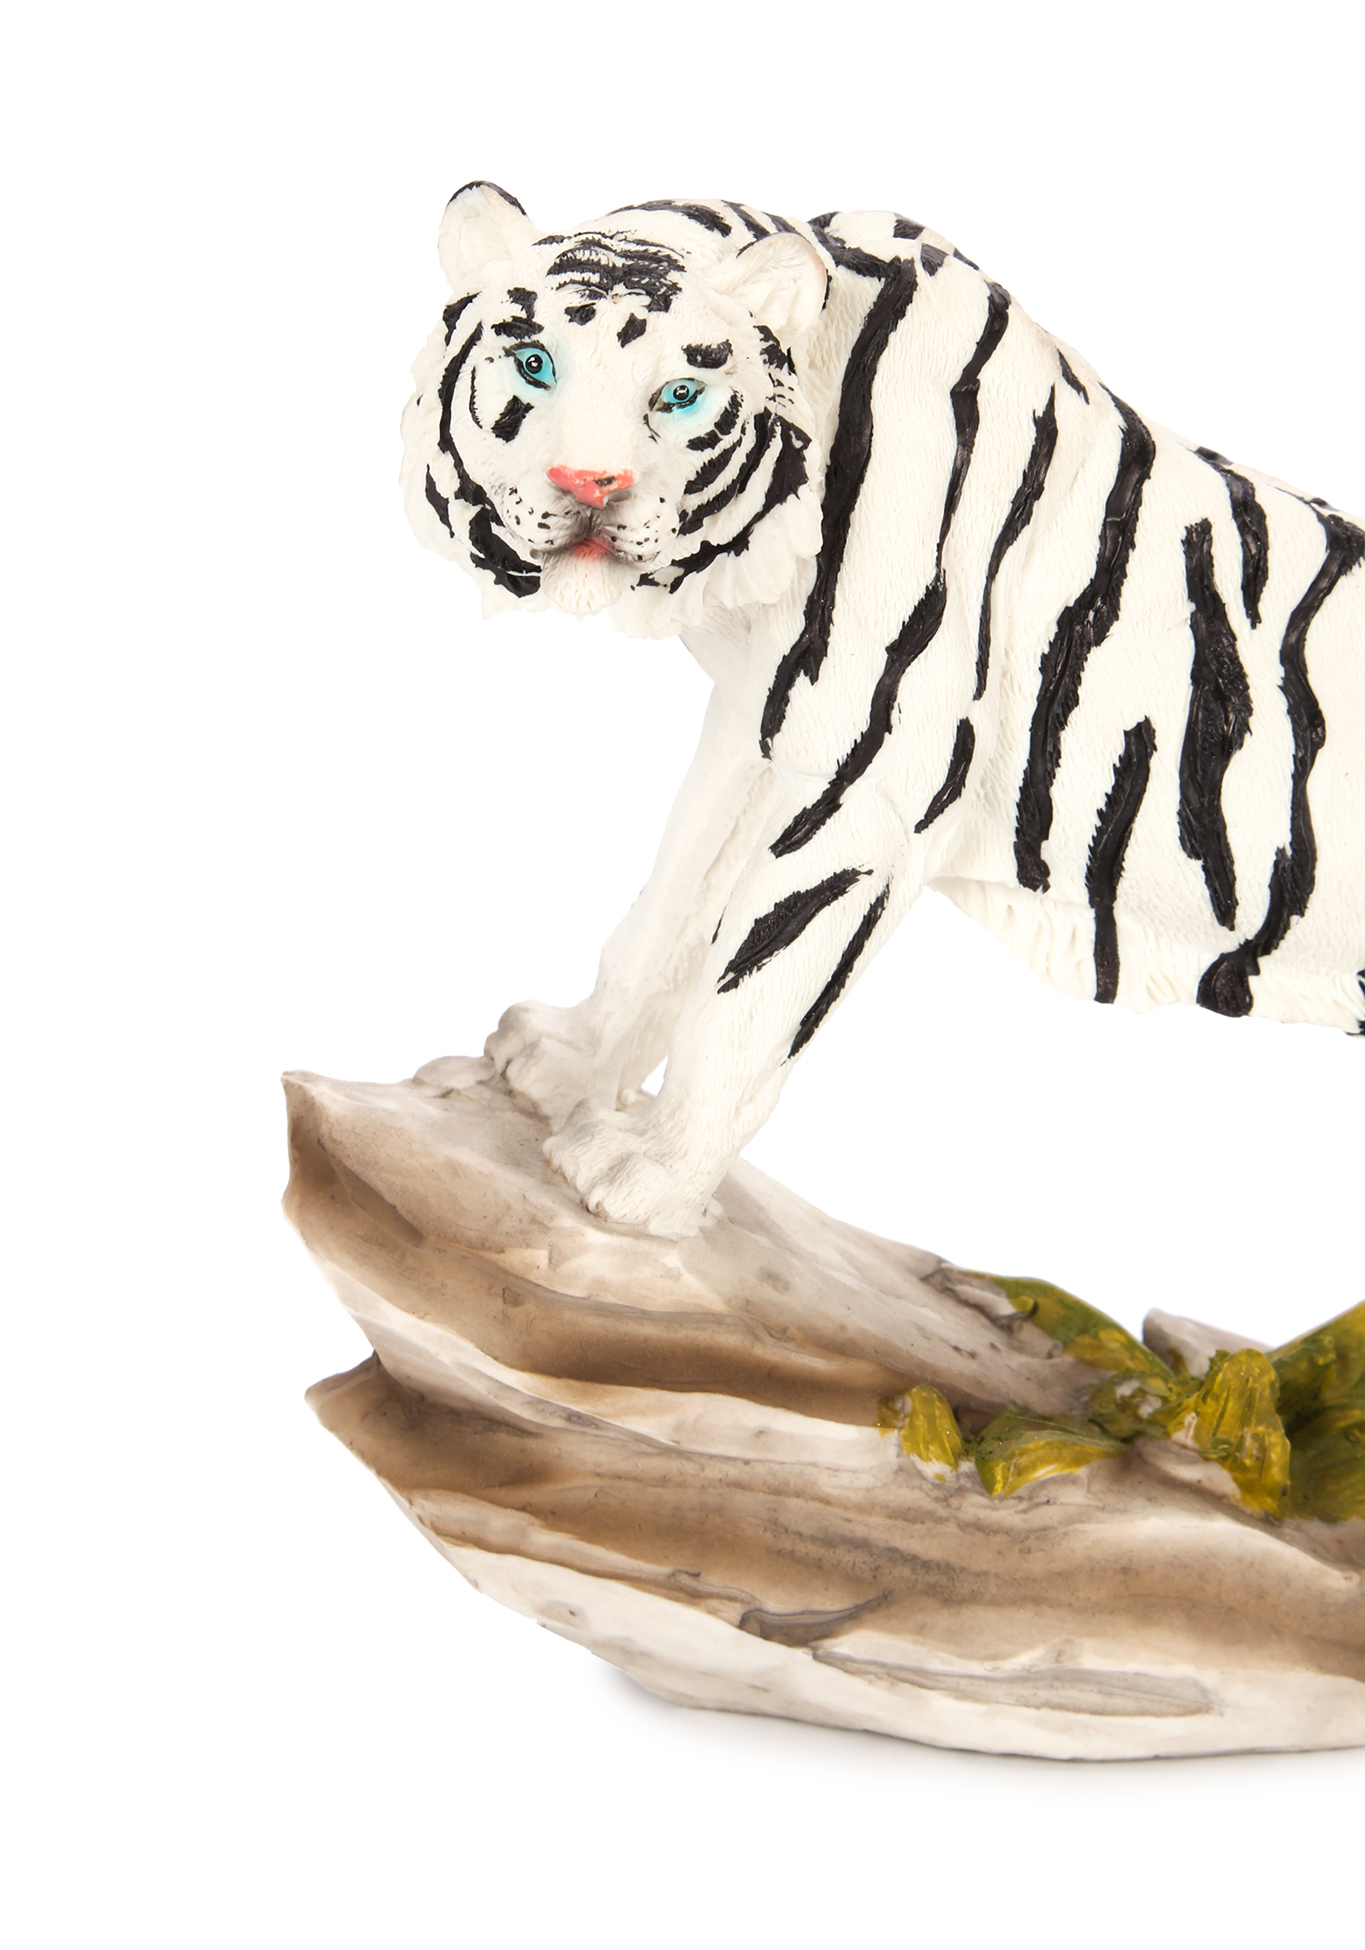 Оберег интерьерный "Тигр" Lefard, цвет стойка бенгальского тигра, размер 20,5*7*15 см - фото 6